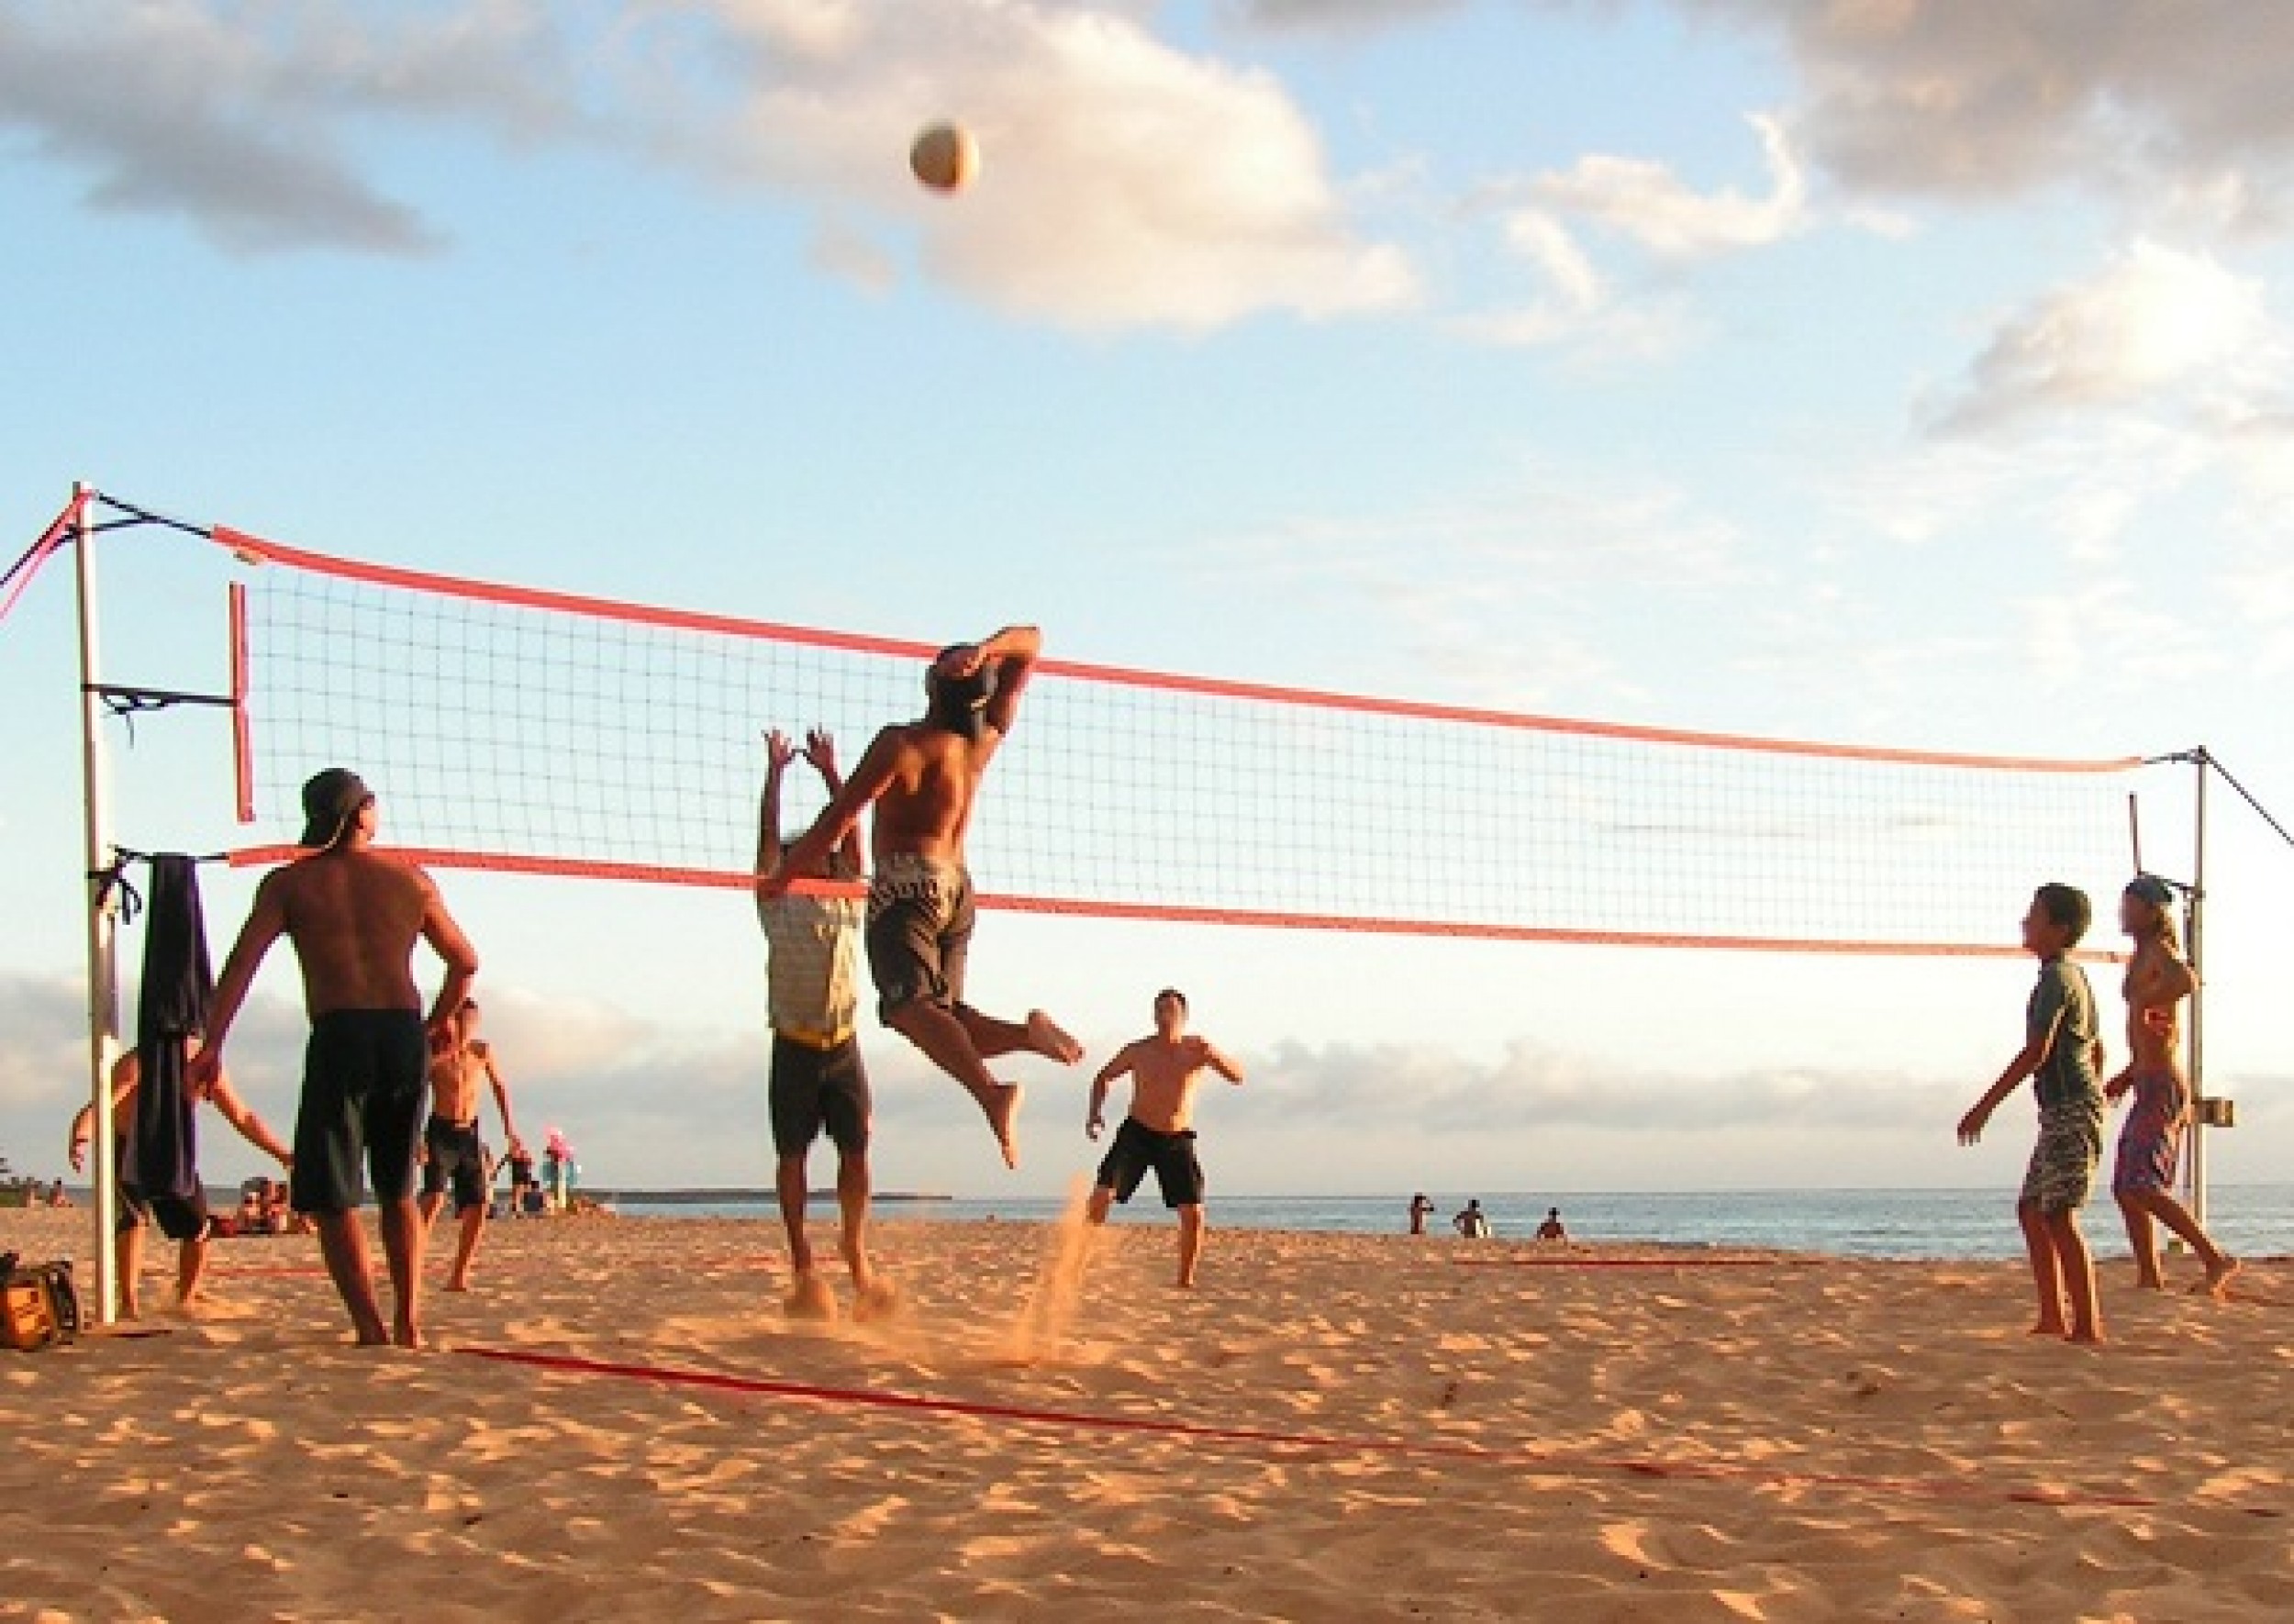 Отдых спорт и развлечение. Пляжный волейбол. Волейбол на пляже. Пляжный волейбол спорт.